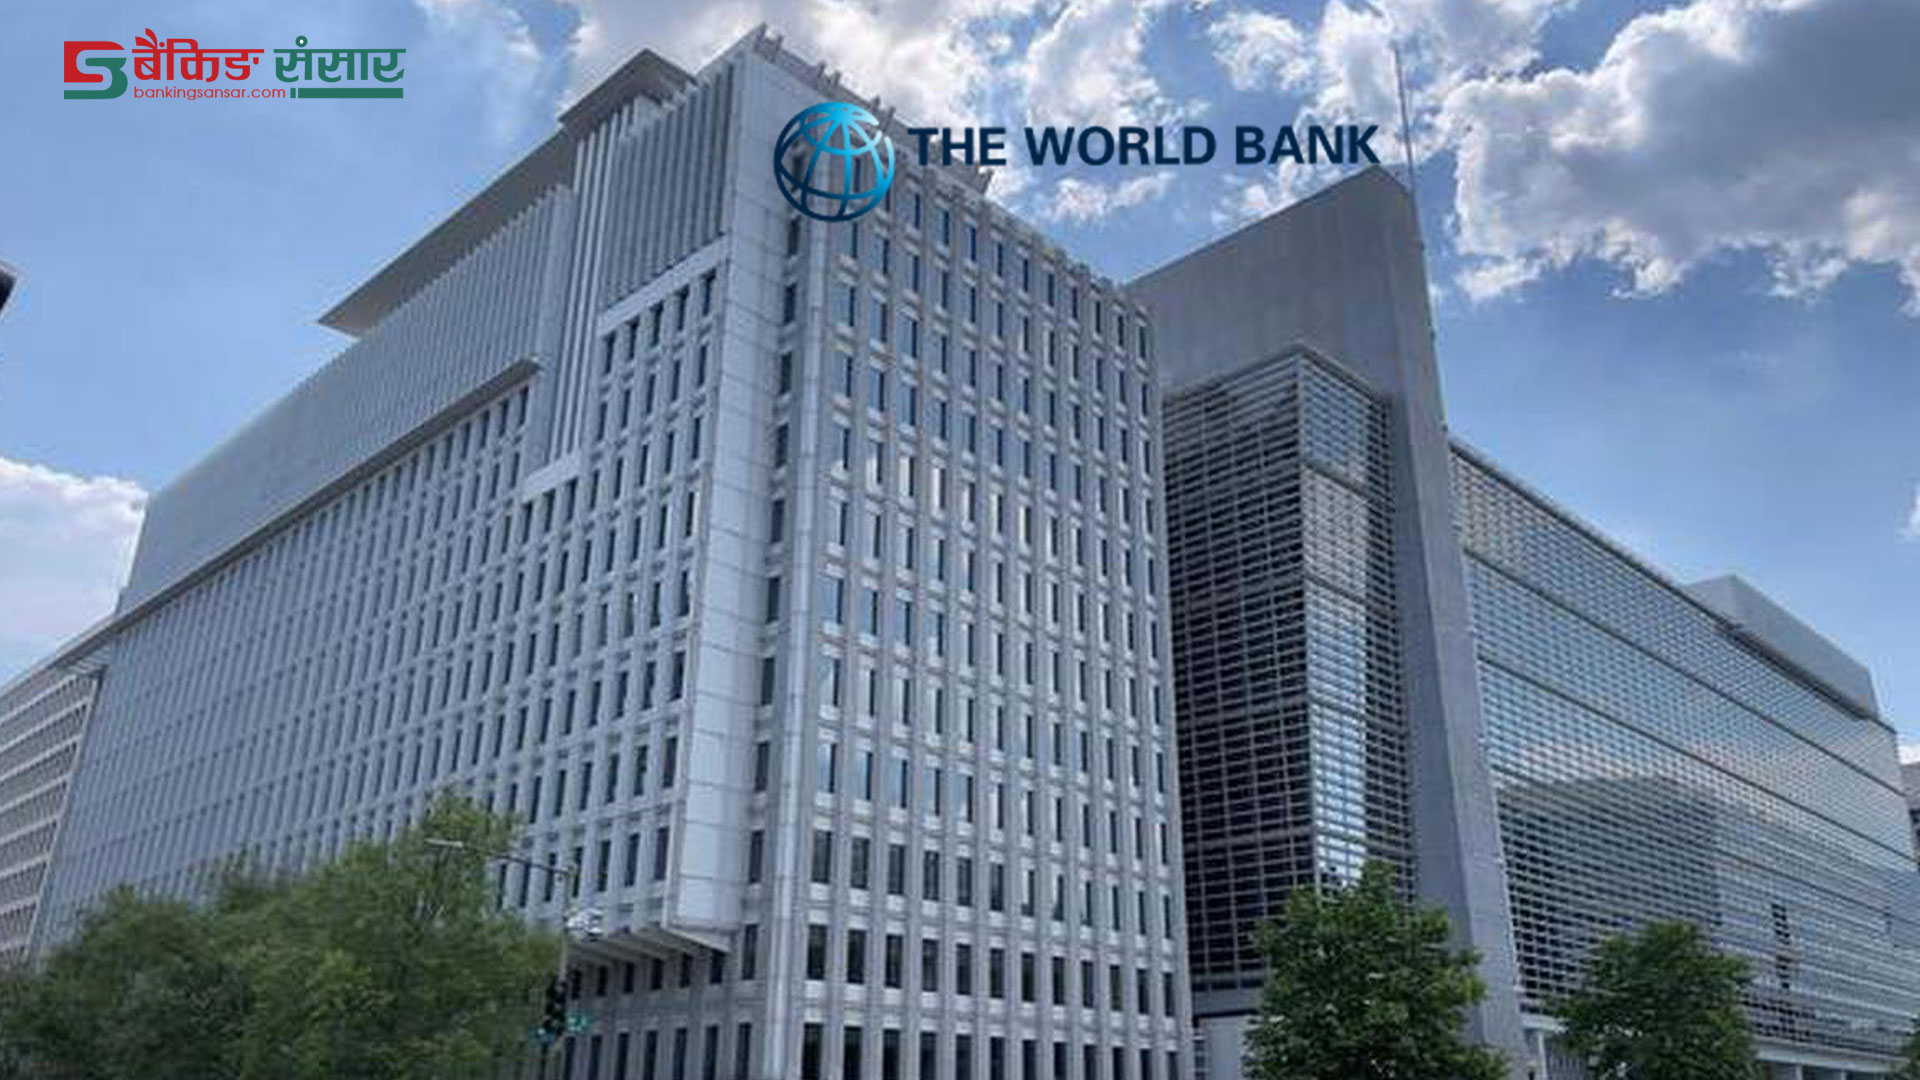 विश्व बैंकले नेपाललाई ८० मिलियन ऋण दिने, वित्तीय सेवाहरूमा पहुँच बढाउन सहयोग पुग्ने विश्वास